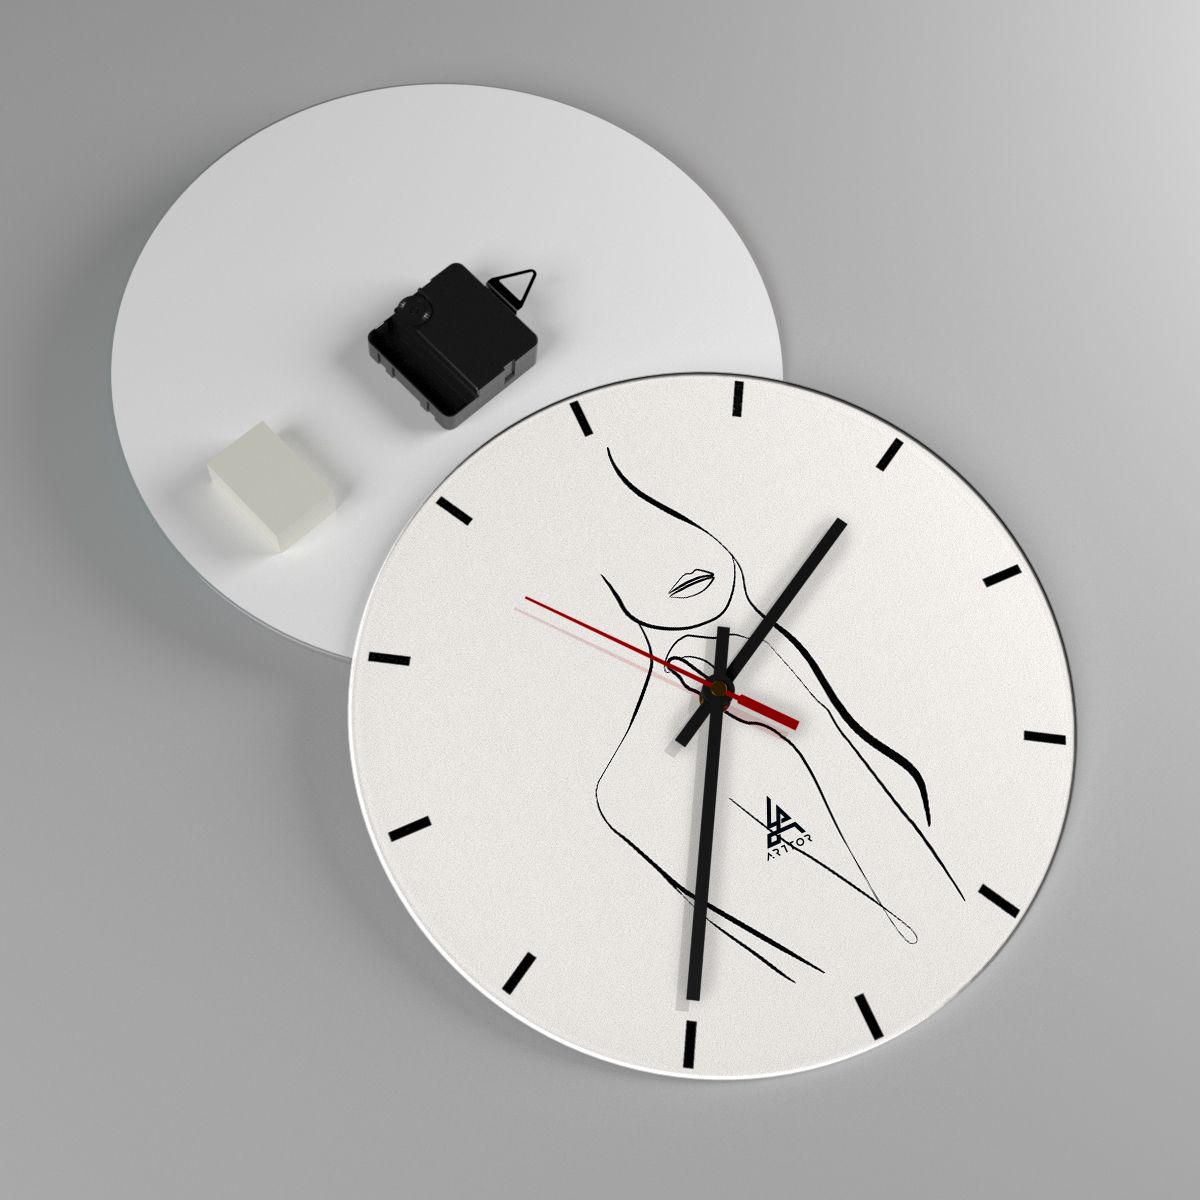 Reloj de pared Abstracción, Reloj de pared Cuerpo De Mujer, Reloj de pared Gráficos, Reloj de pared Arte Lineal, Reloj de pared Arte Moderno